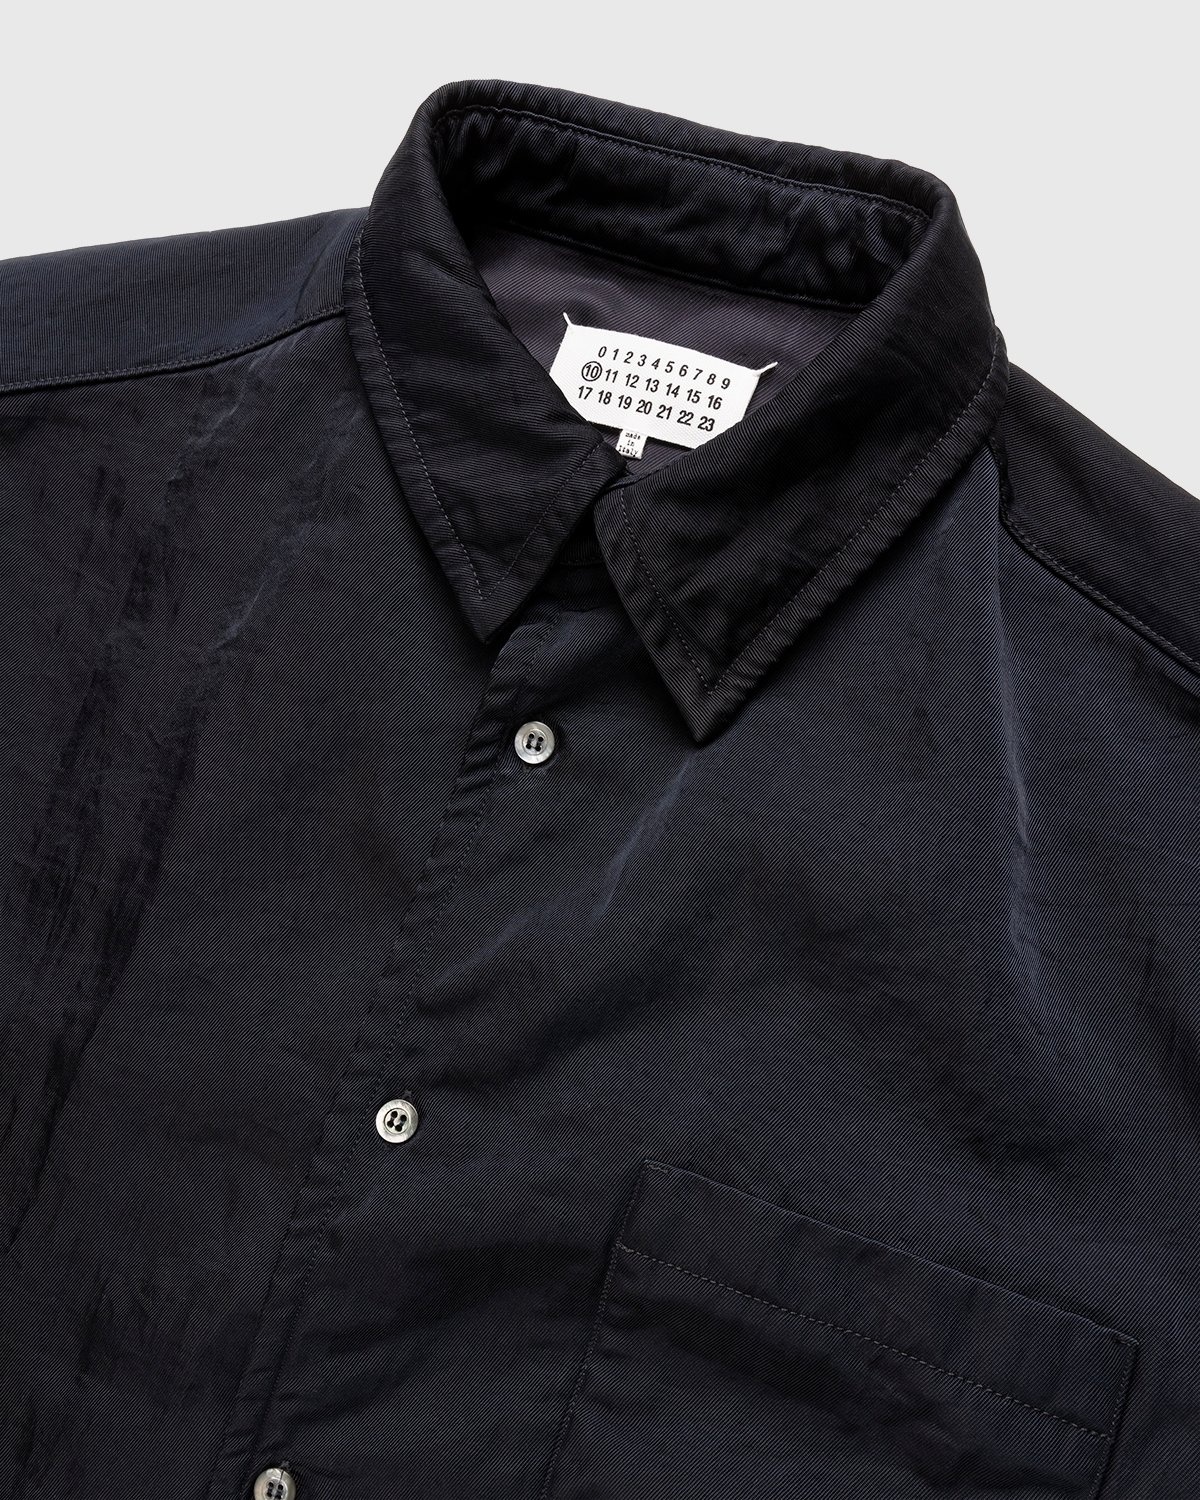 Maison Margiela – Oversized Nylon Jacket Navy - Longsleeve Shirts - Black - Image 4